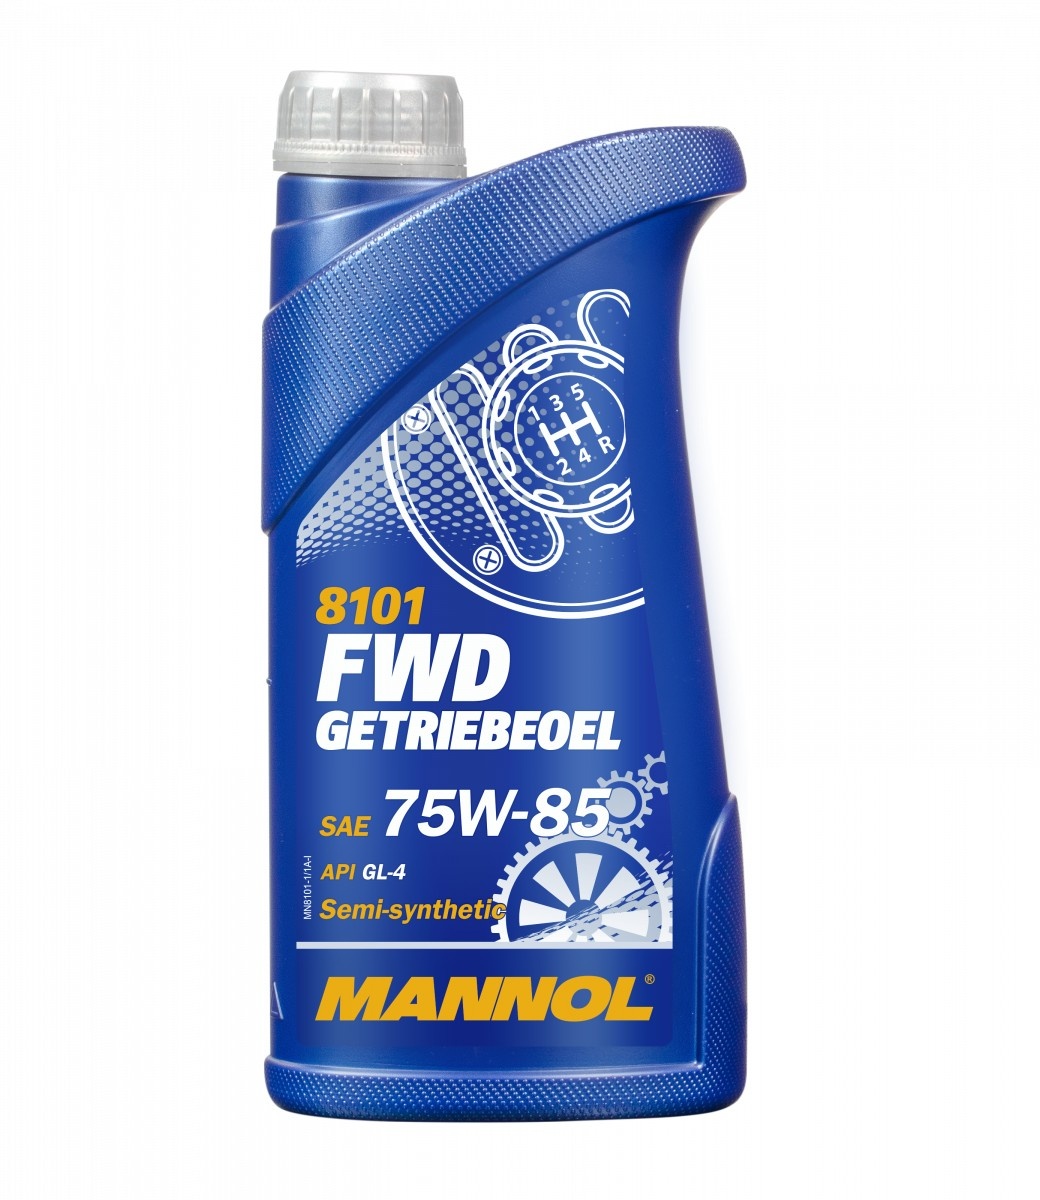 Трансмиссионное масло Mannol FWD Getriebeoel 75W-85 8101 1L